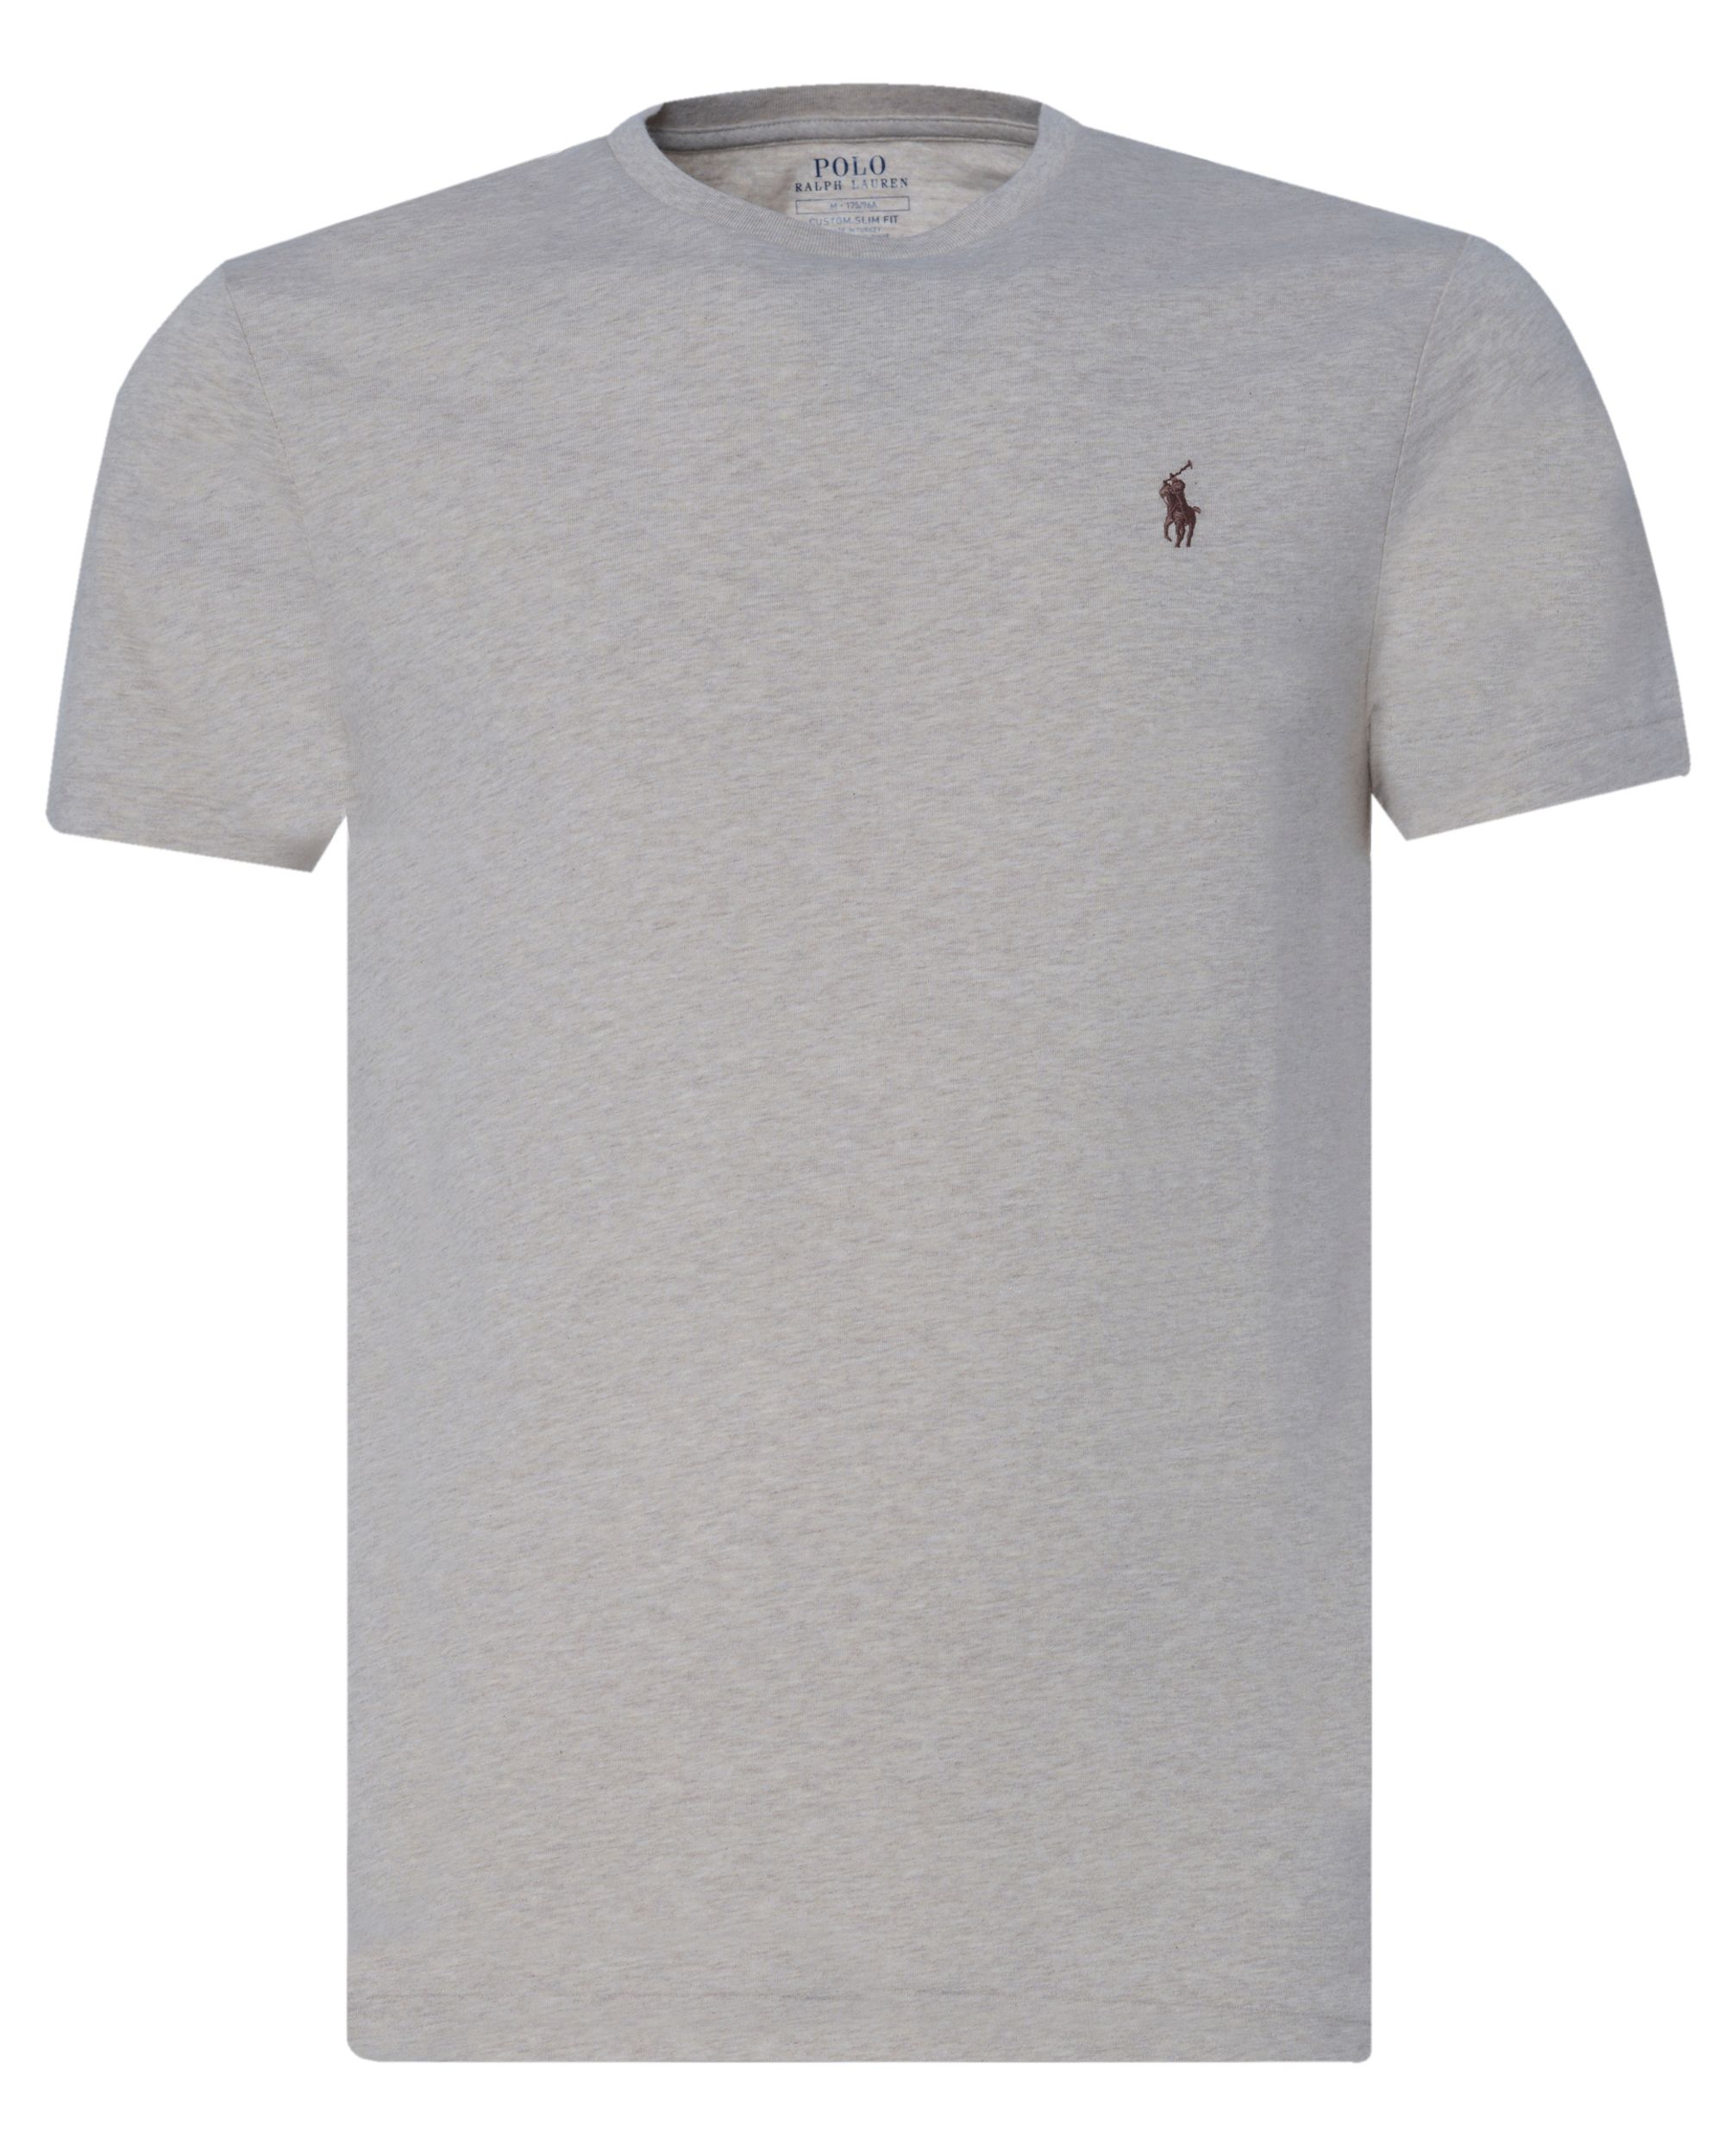 Polo Ralph Lauren - T-shirt KM Sand 081437-001-L